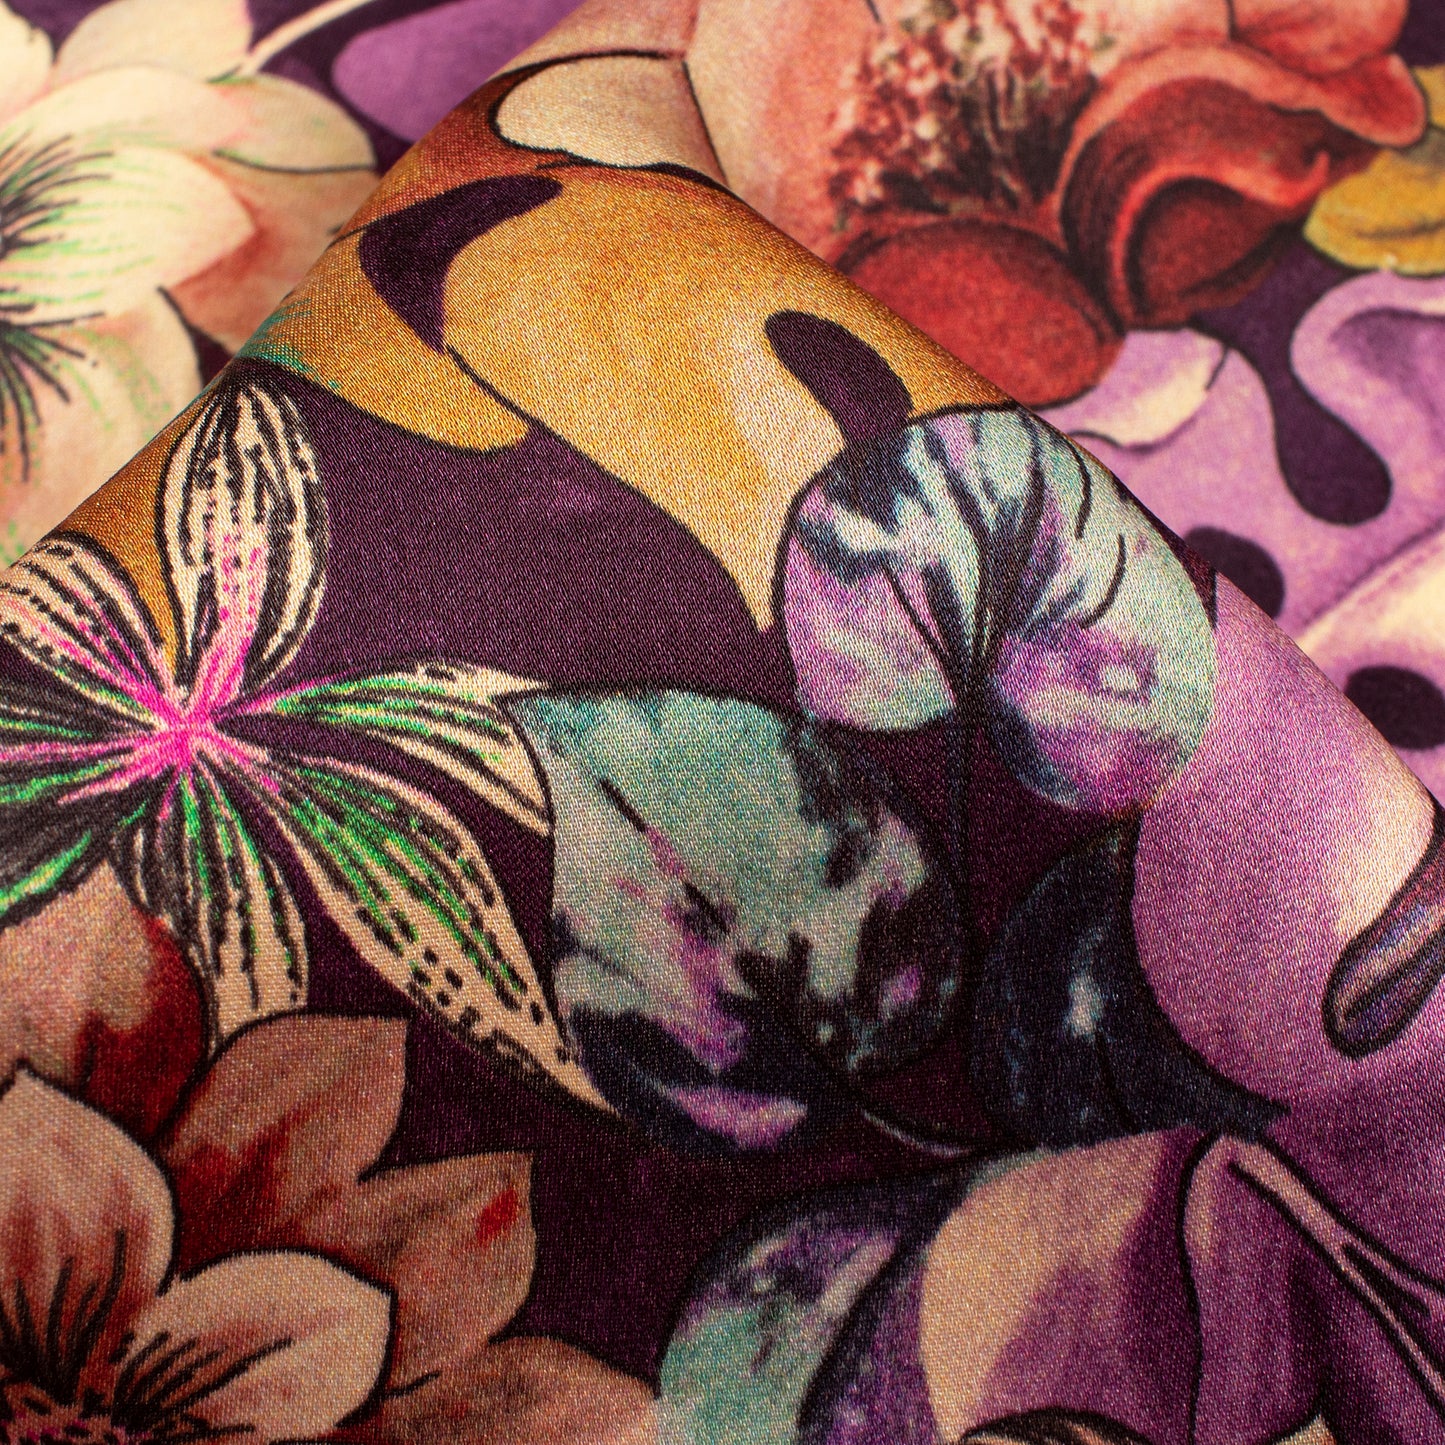 Catchy Floral Digital Print Assami Bemberg Satin Fabric